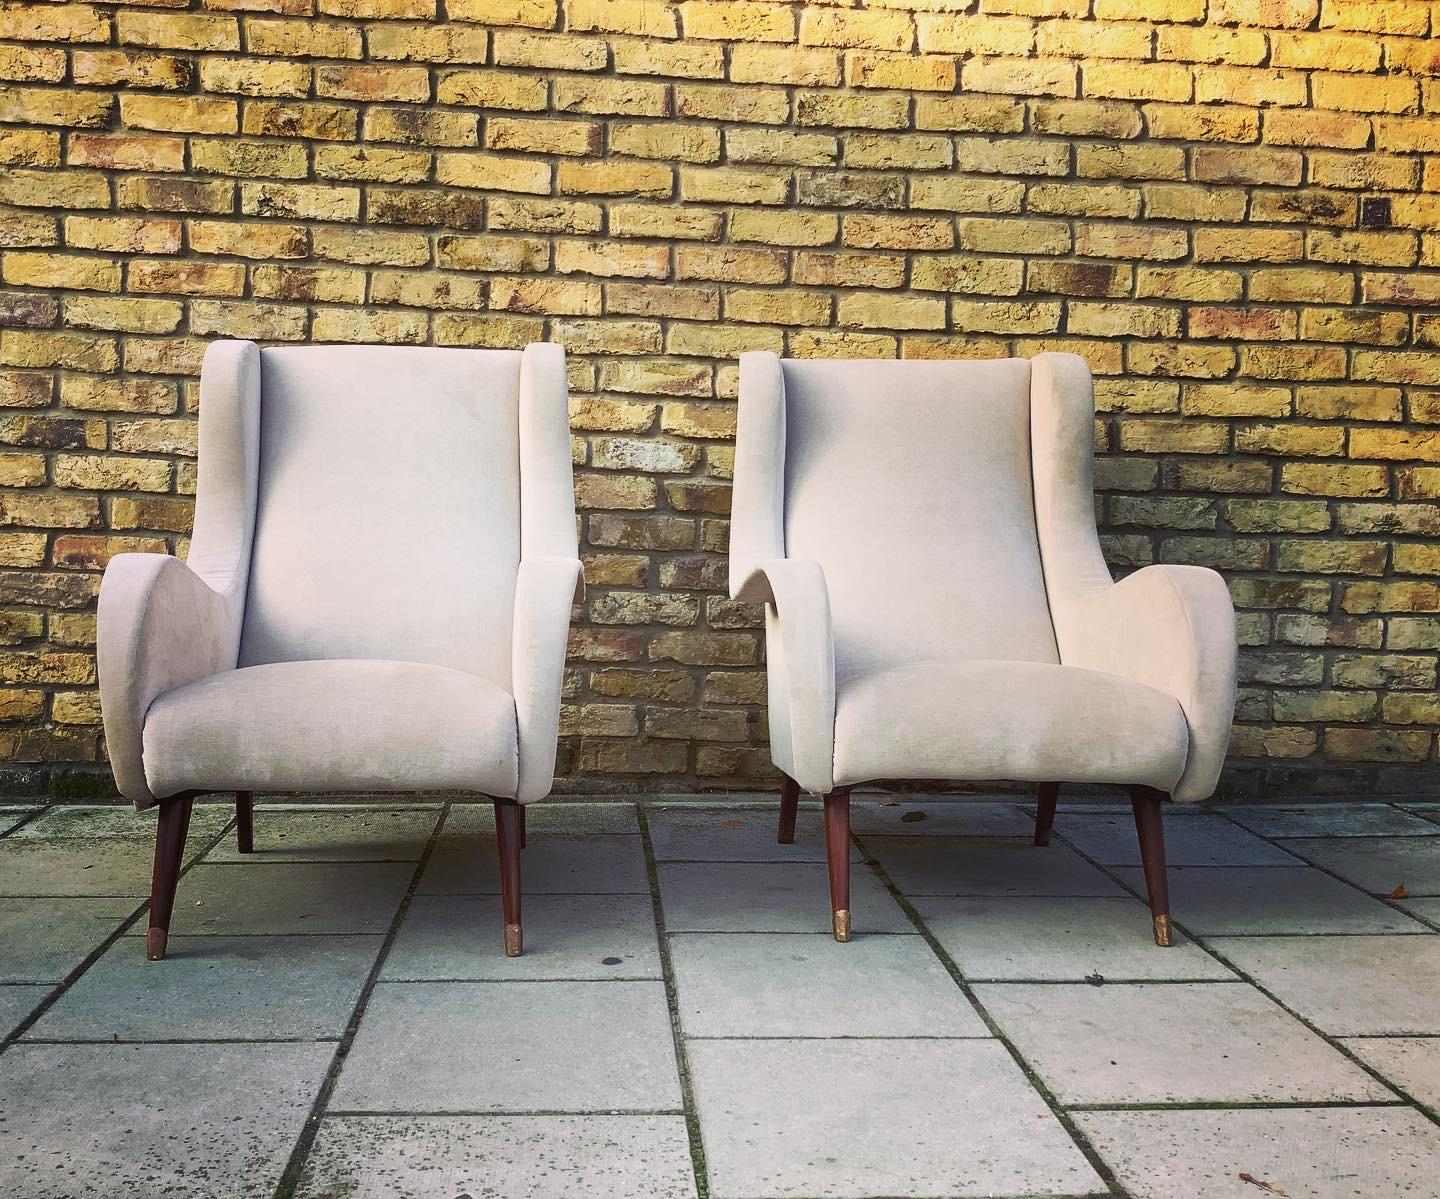 Fantastique paire de fauteuils français des années 1950 en tissu clair et chaud.